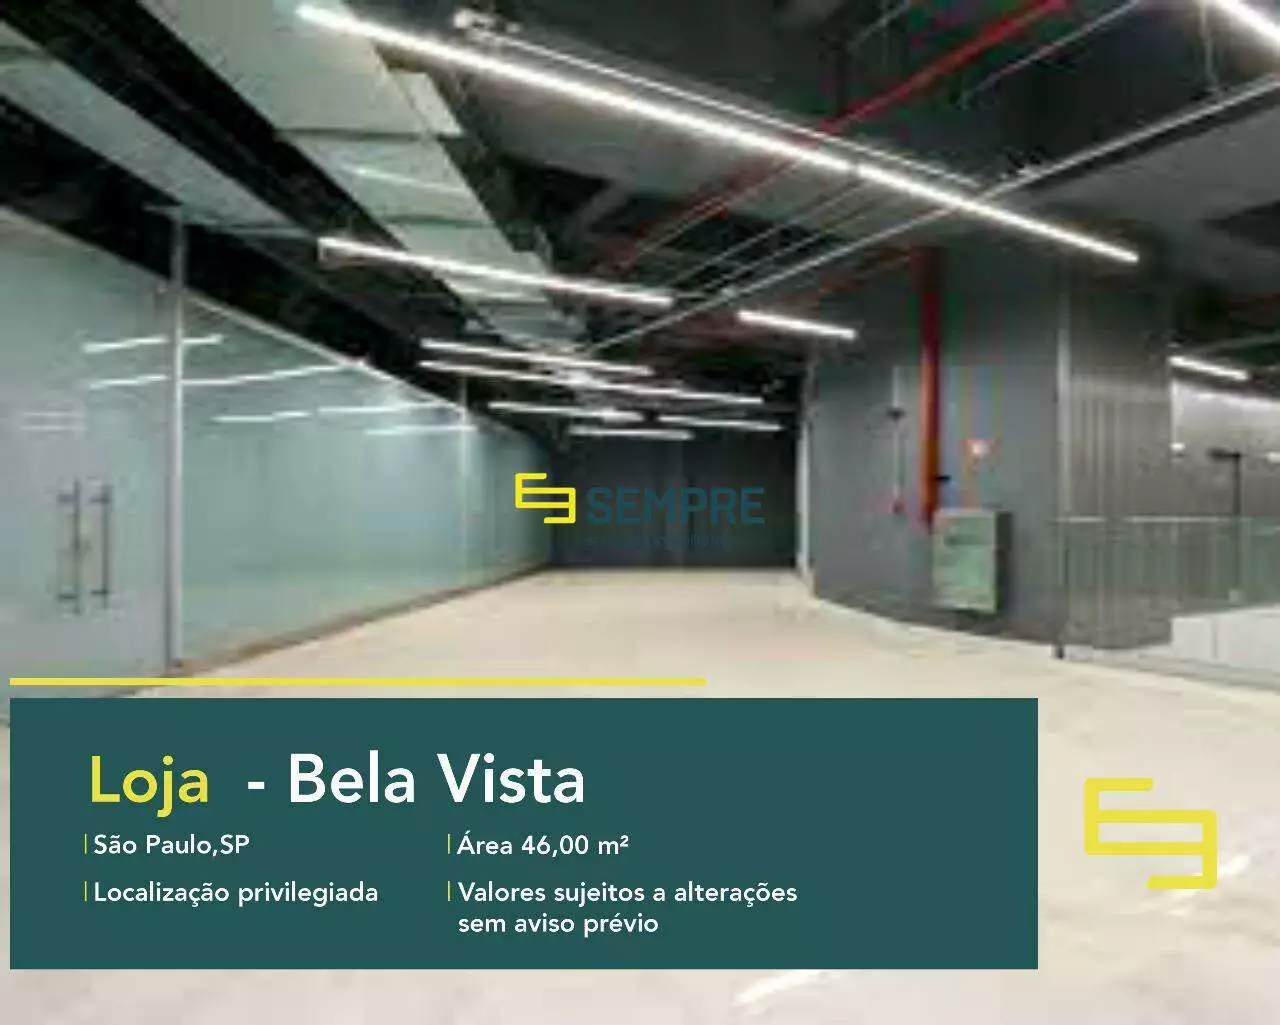 Loja para locação no bairro Bela Vista em São Paulo, excelente localização. O estabelecimento comercial conta com área de 46,02 m².